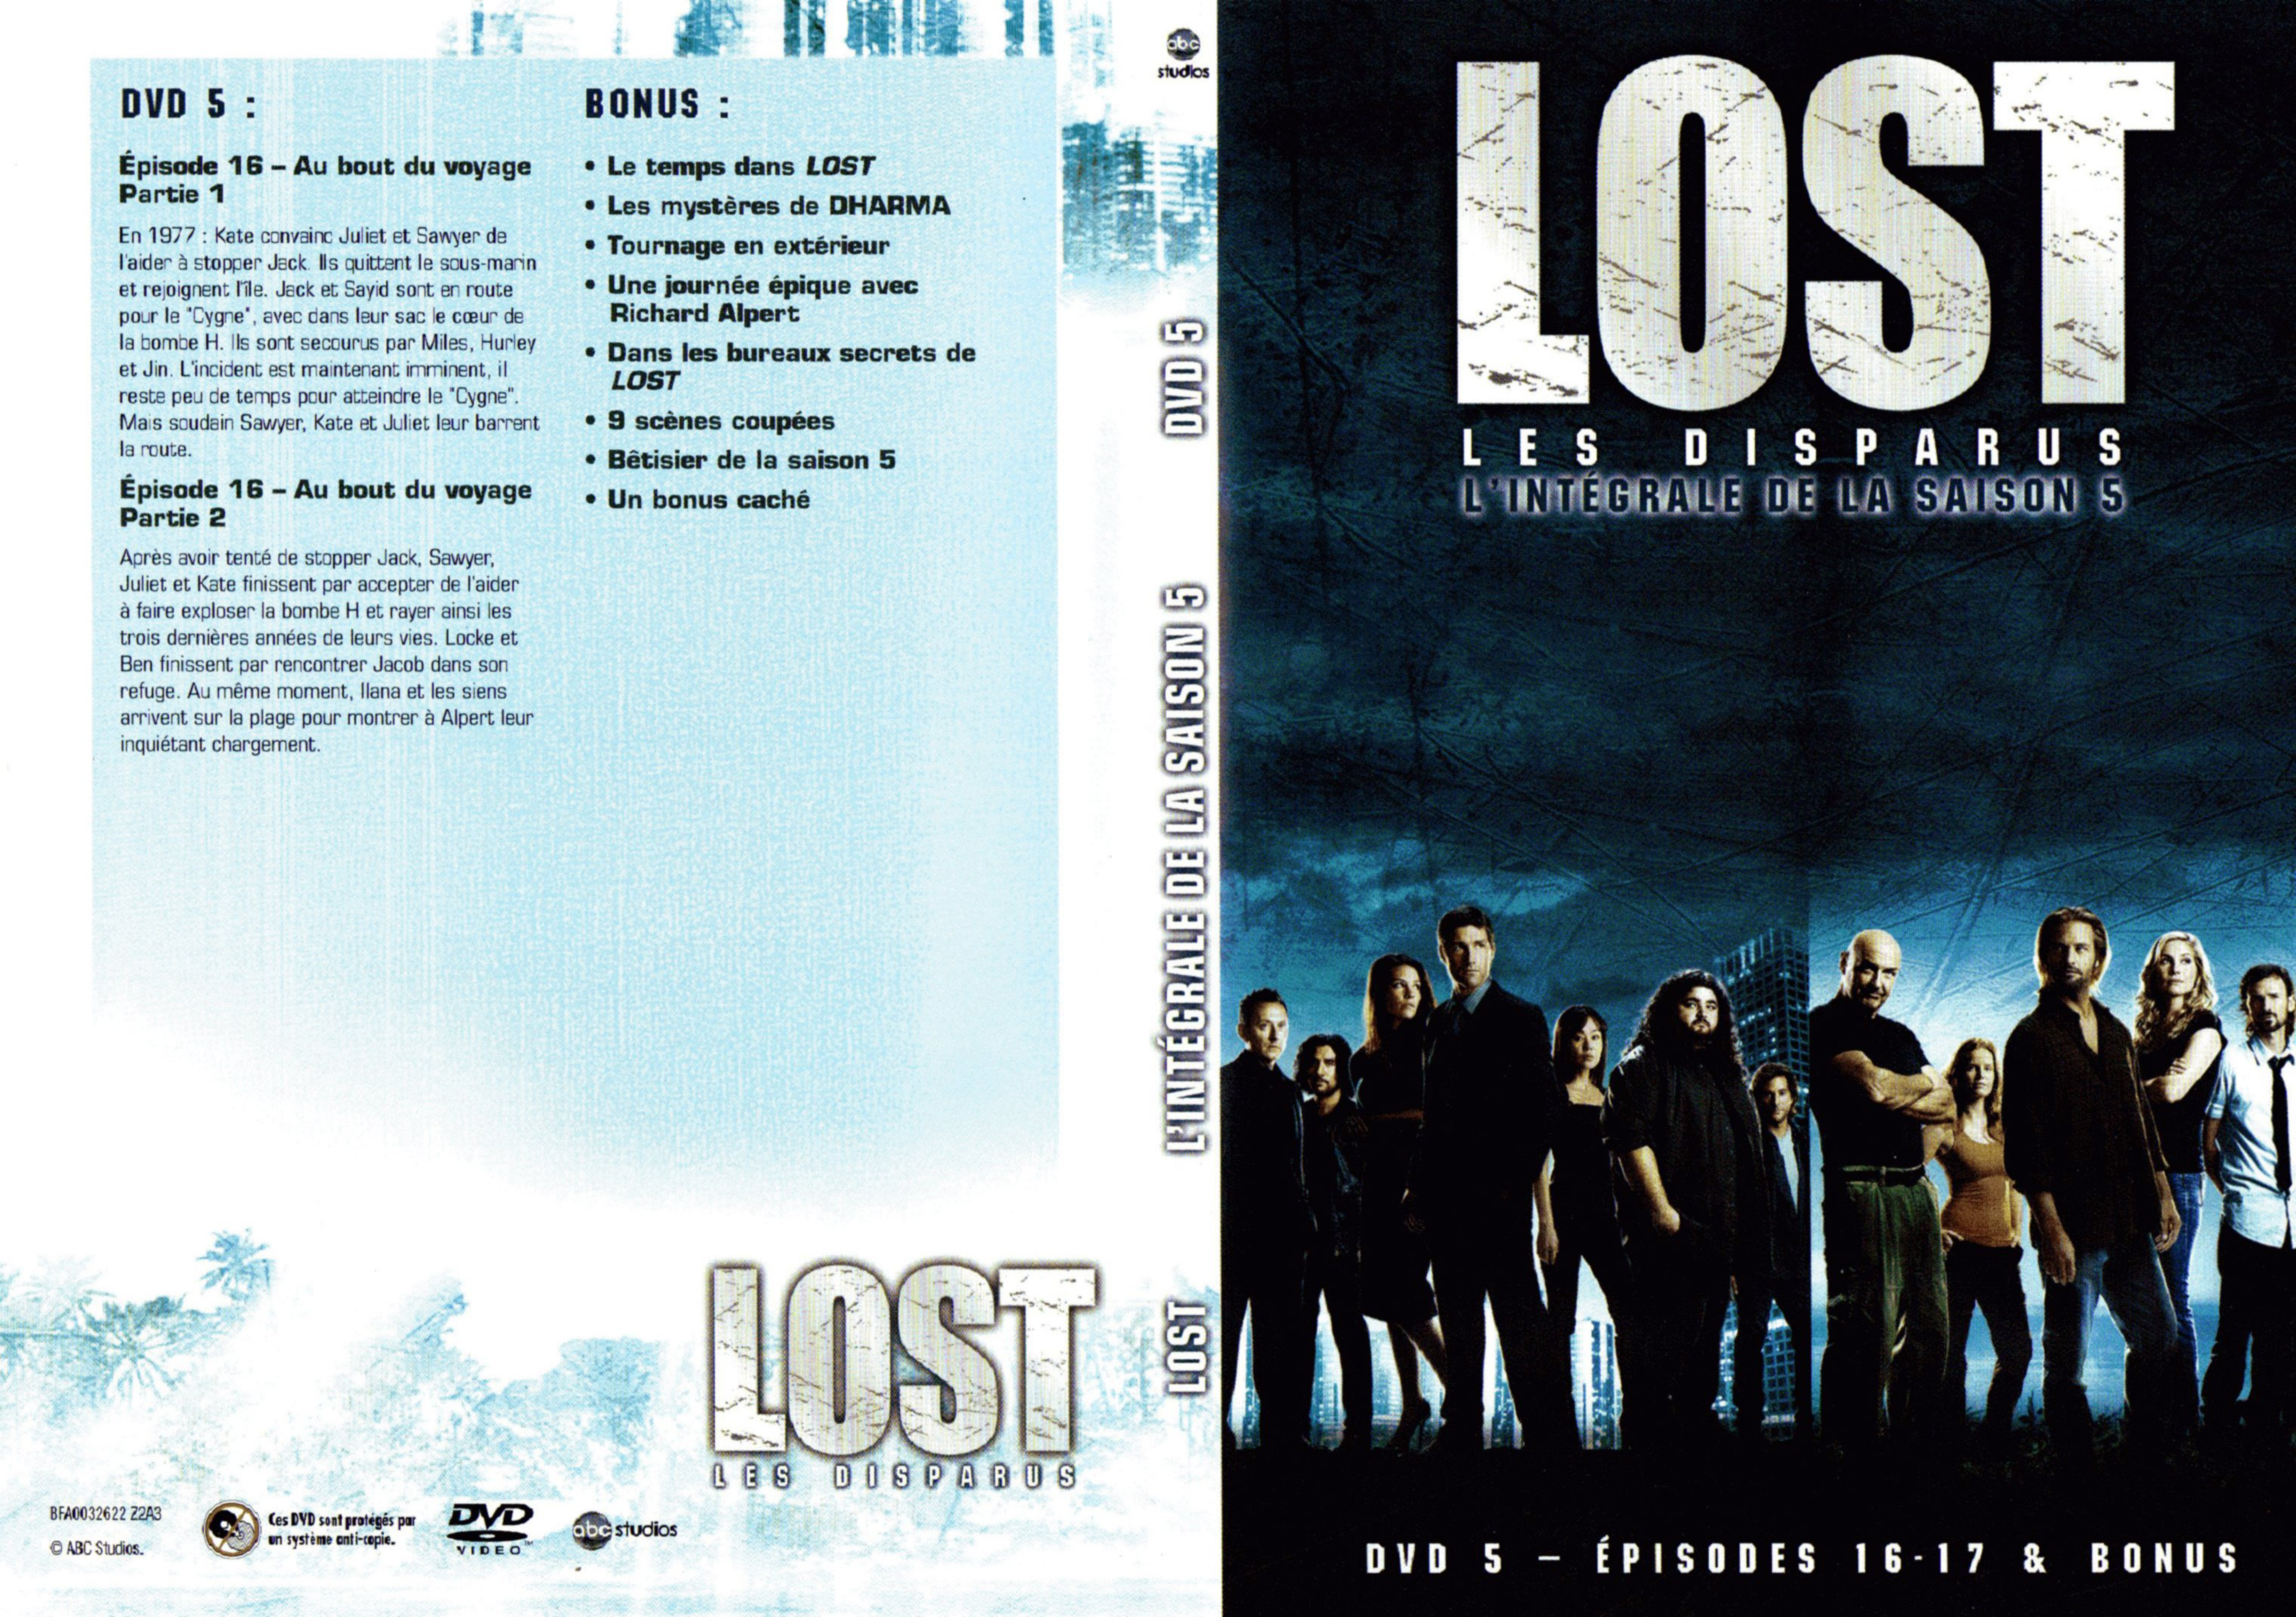 Jaquette DVD Lost Saison 5 DVD 3